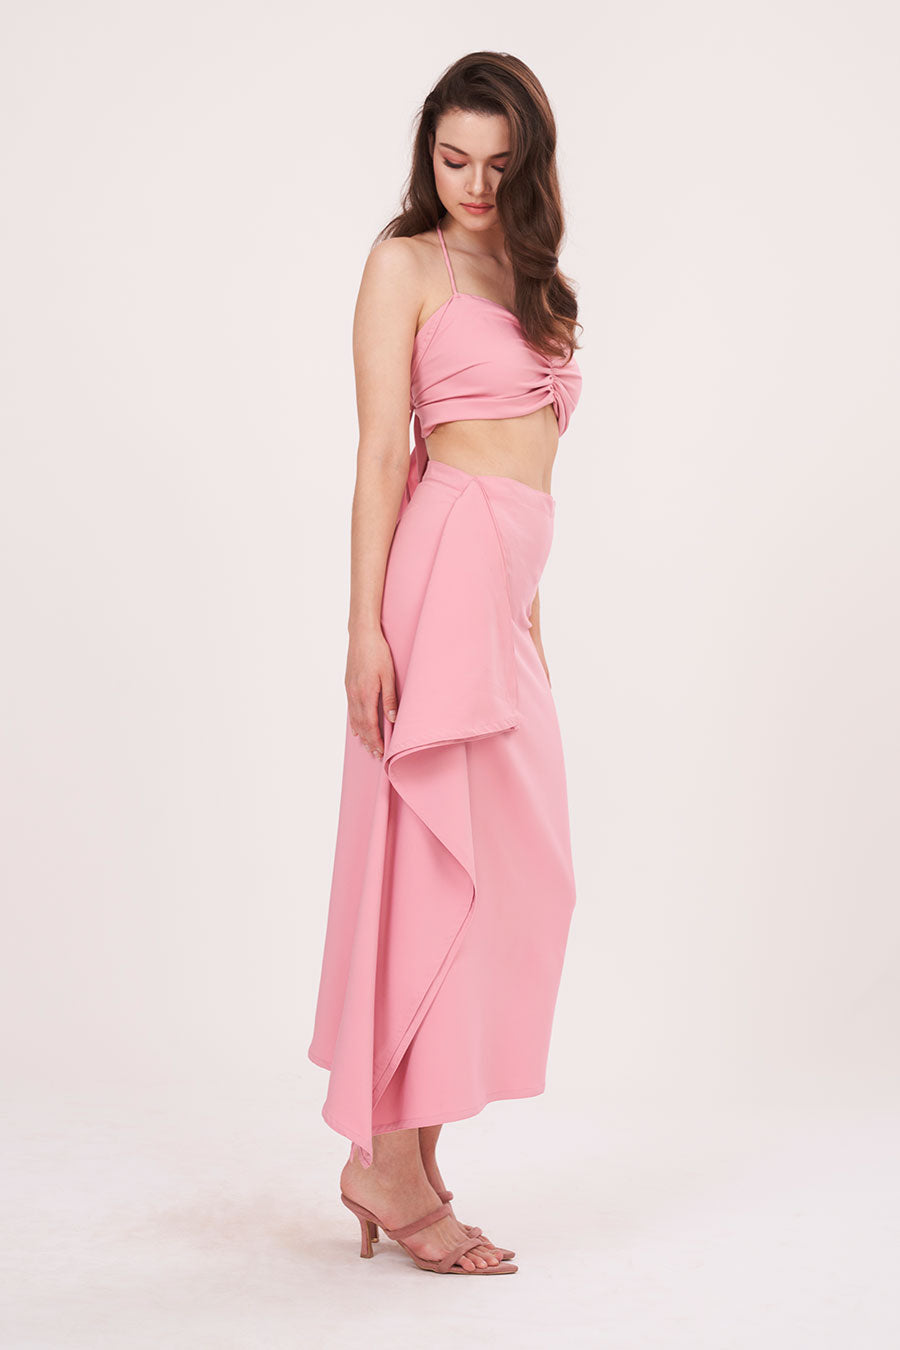 Pink Halter Neck Top & Skirt Co-Ord Set